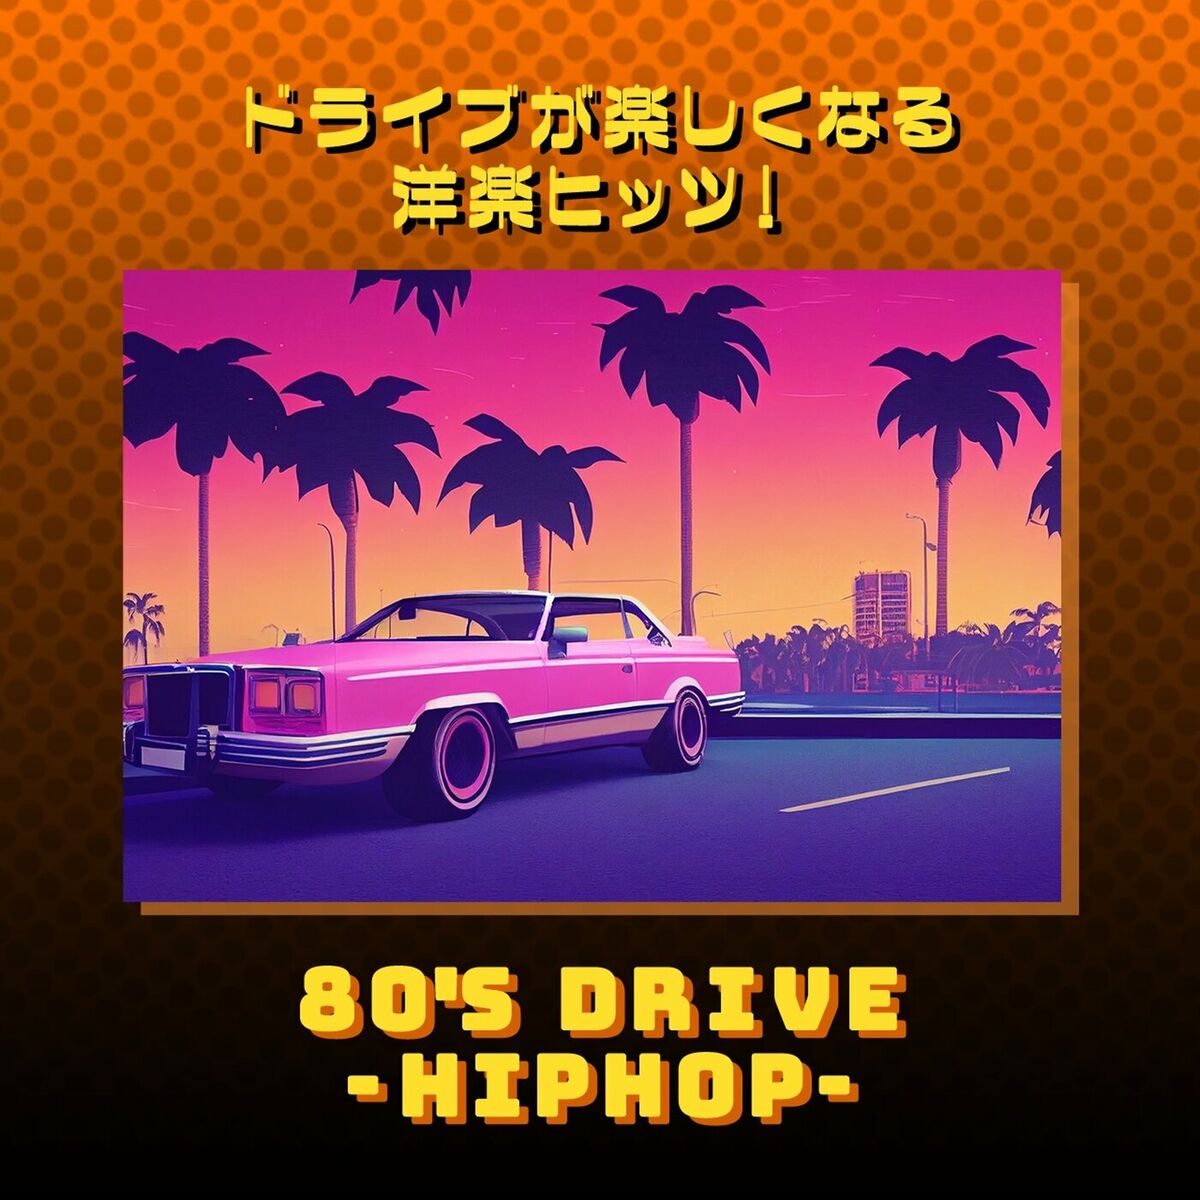 Various Artists - 80's Drive - Hip-Hop -: lyrics and songs | Deezer